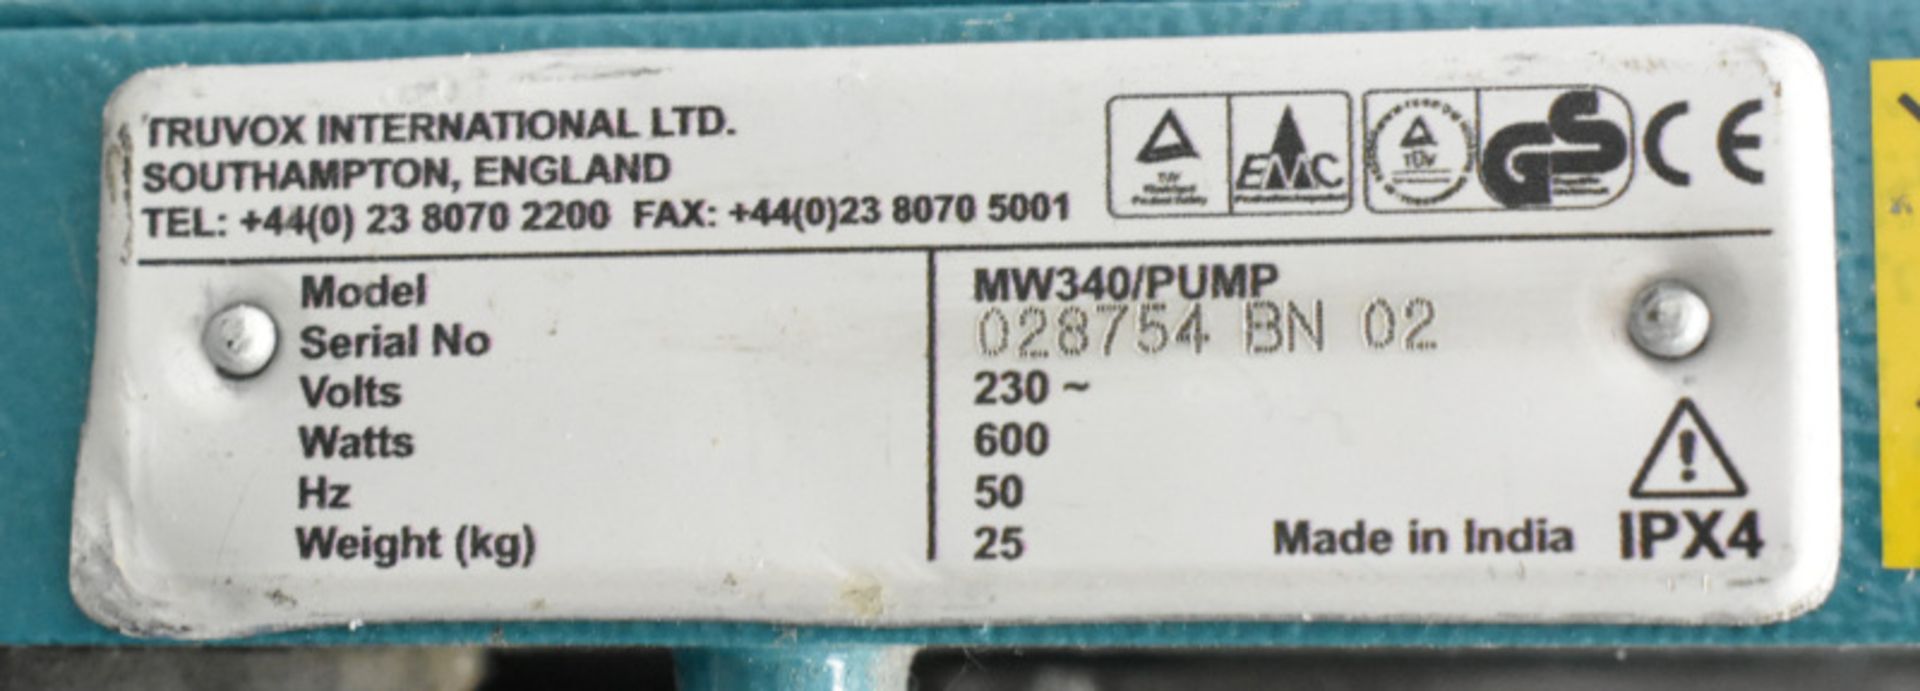 1 x Truvox Multiwash Floor Scrubber Dryer, Model- MW340/Pump, 1 x Truvox Multiwash Floor Scrubber Dr - Image 6 of 6